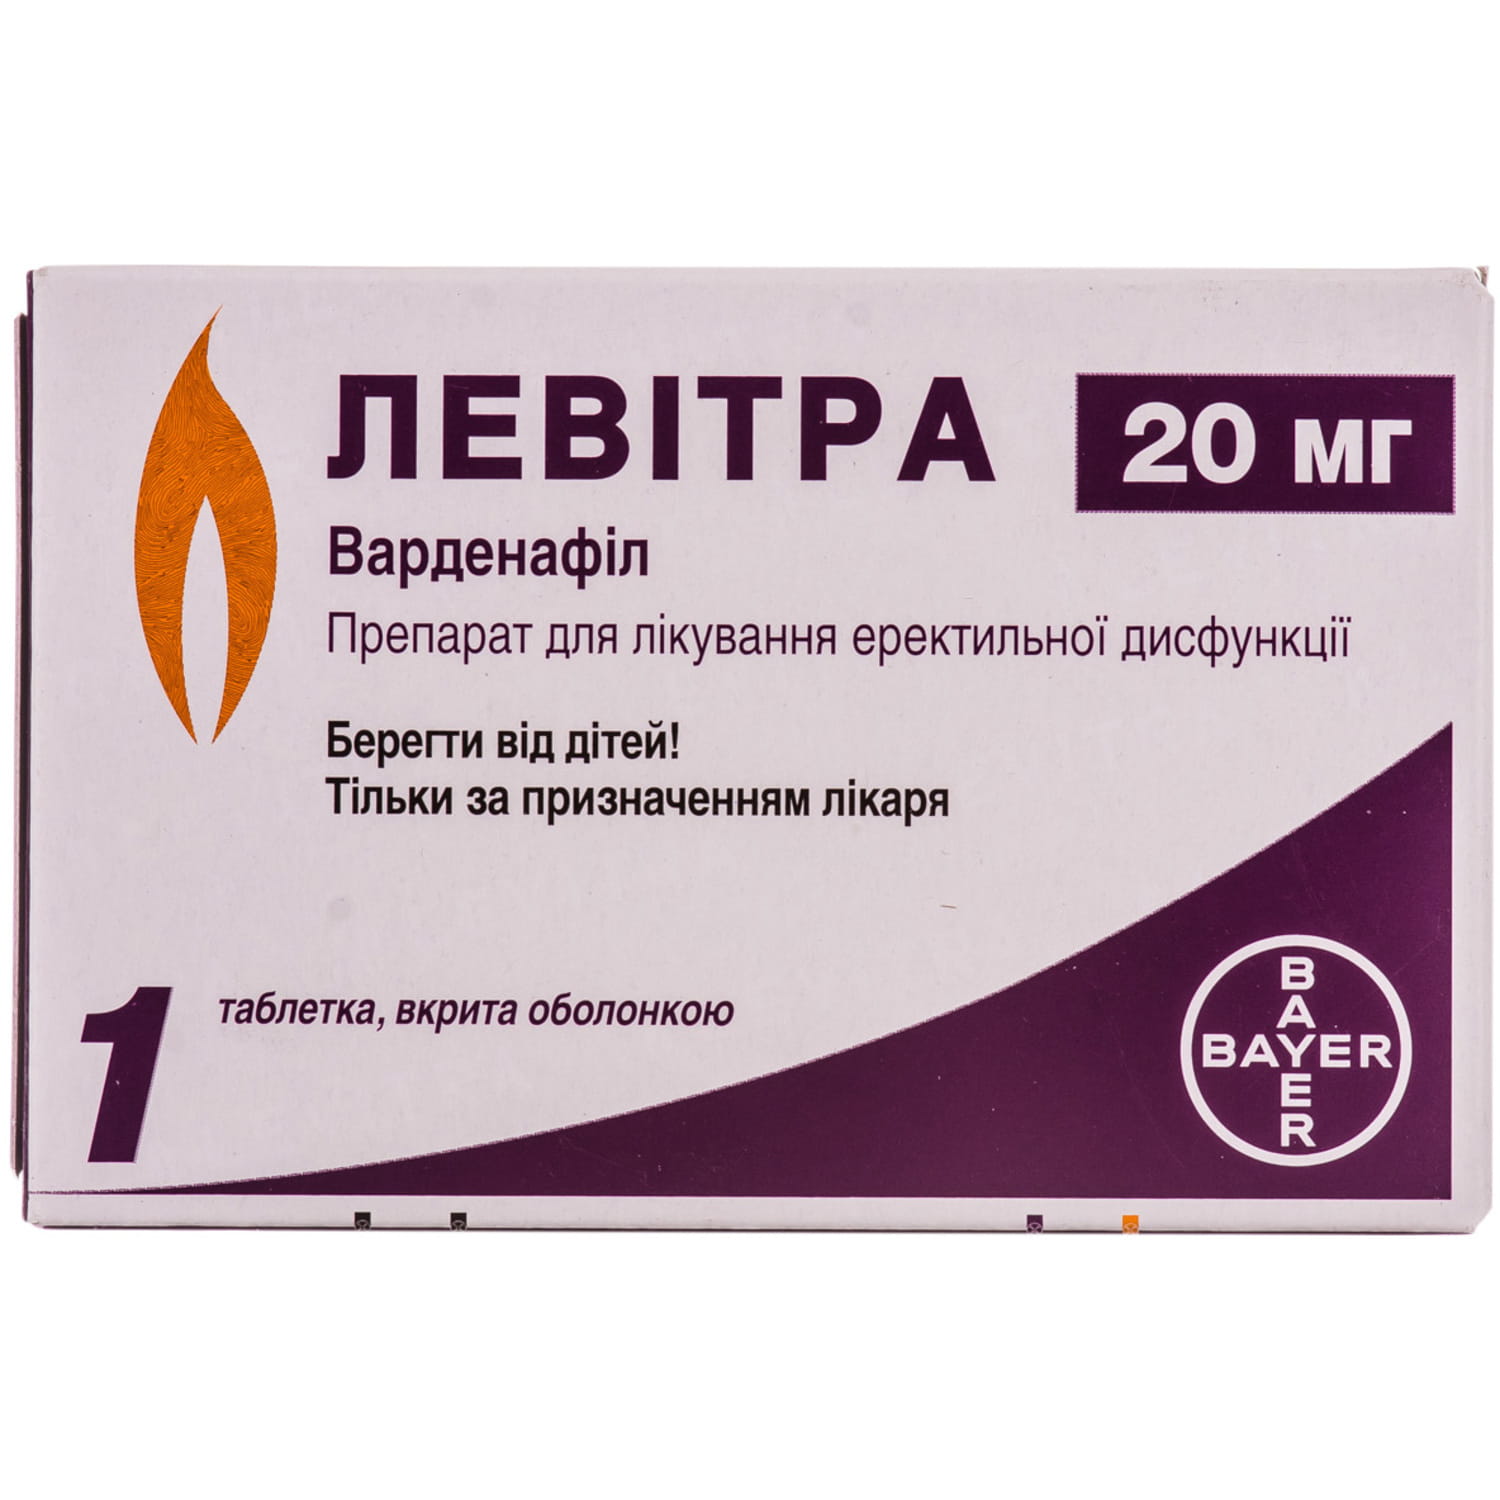 Vilitra 20 MG (левитра 20 мг)